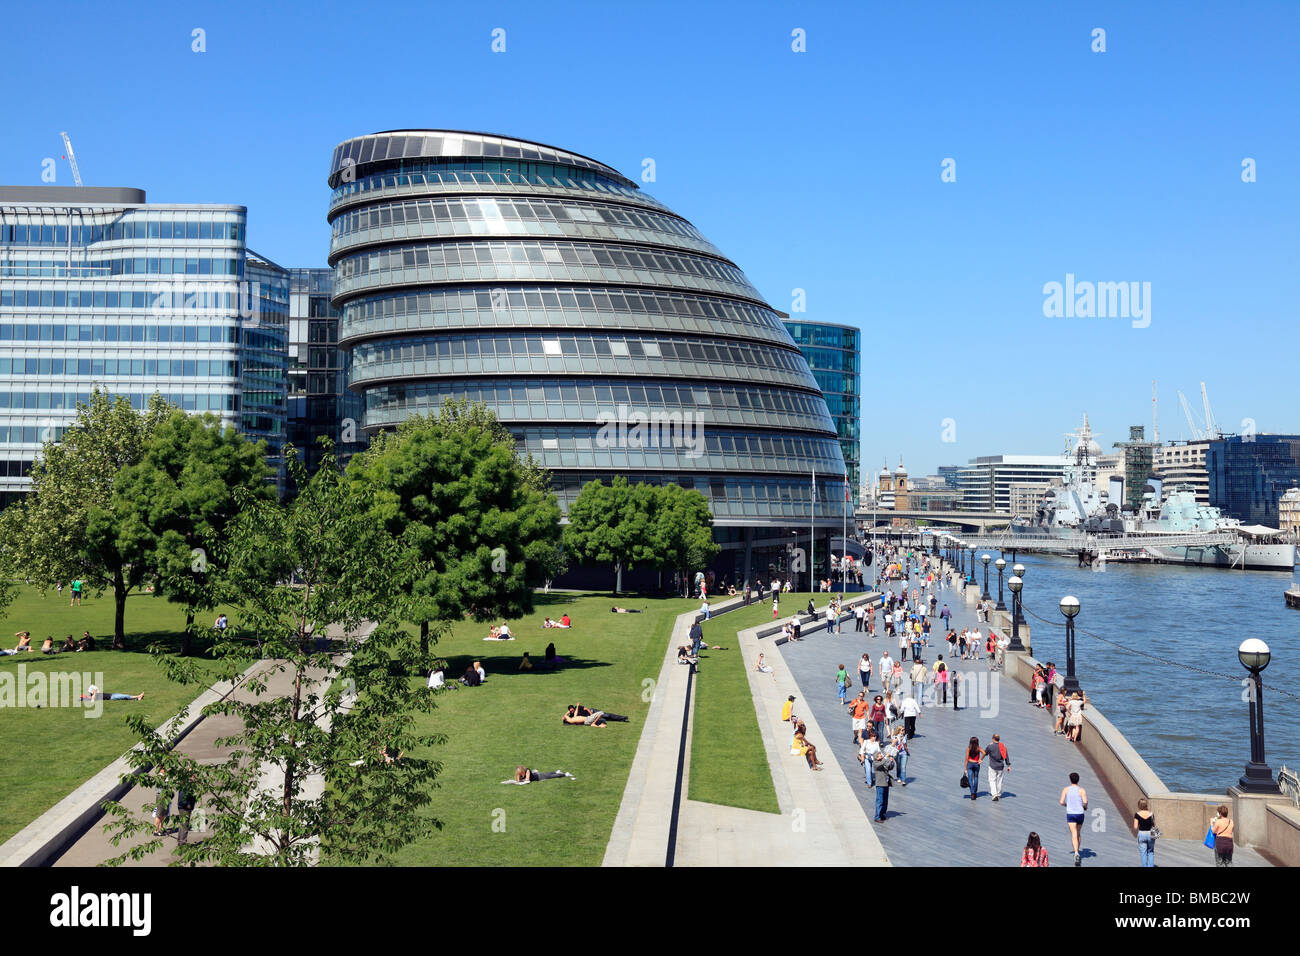 City Hall Londres le quartier général de la Greater London Authority (GLA) et le maire de Londres. Banque D'Images